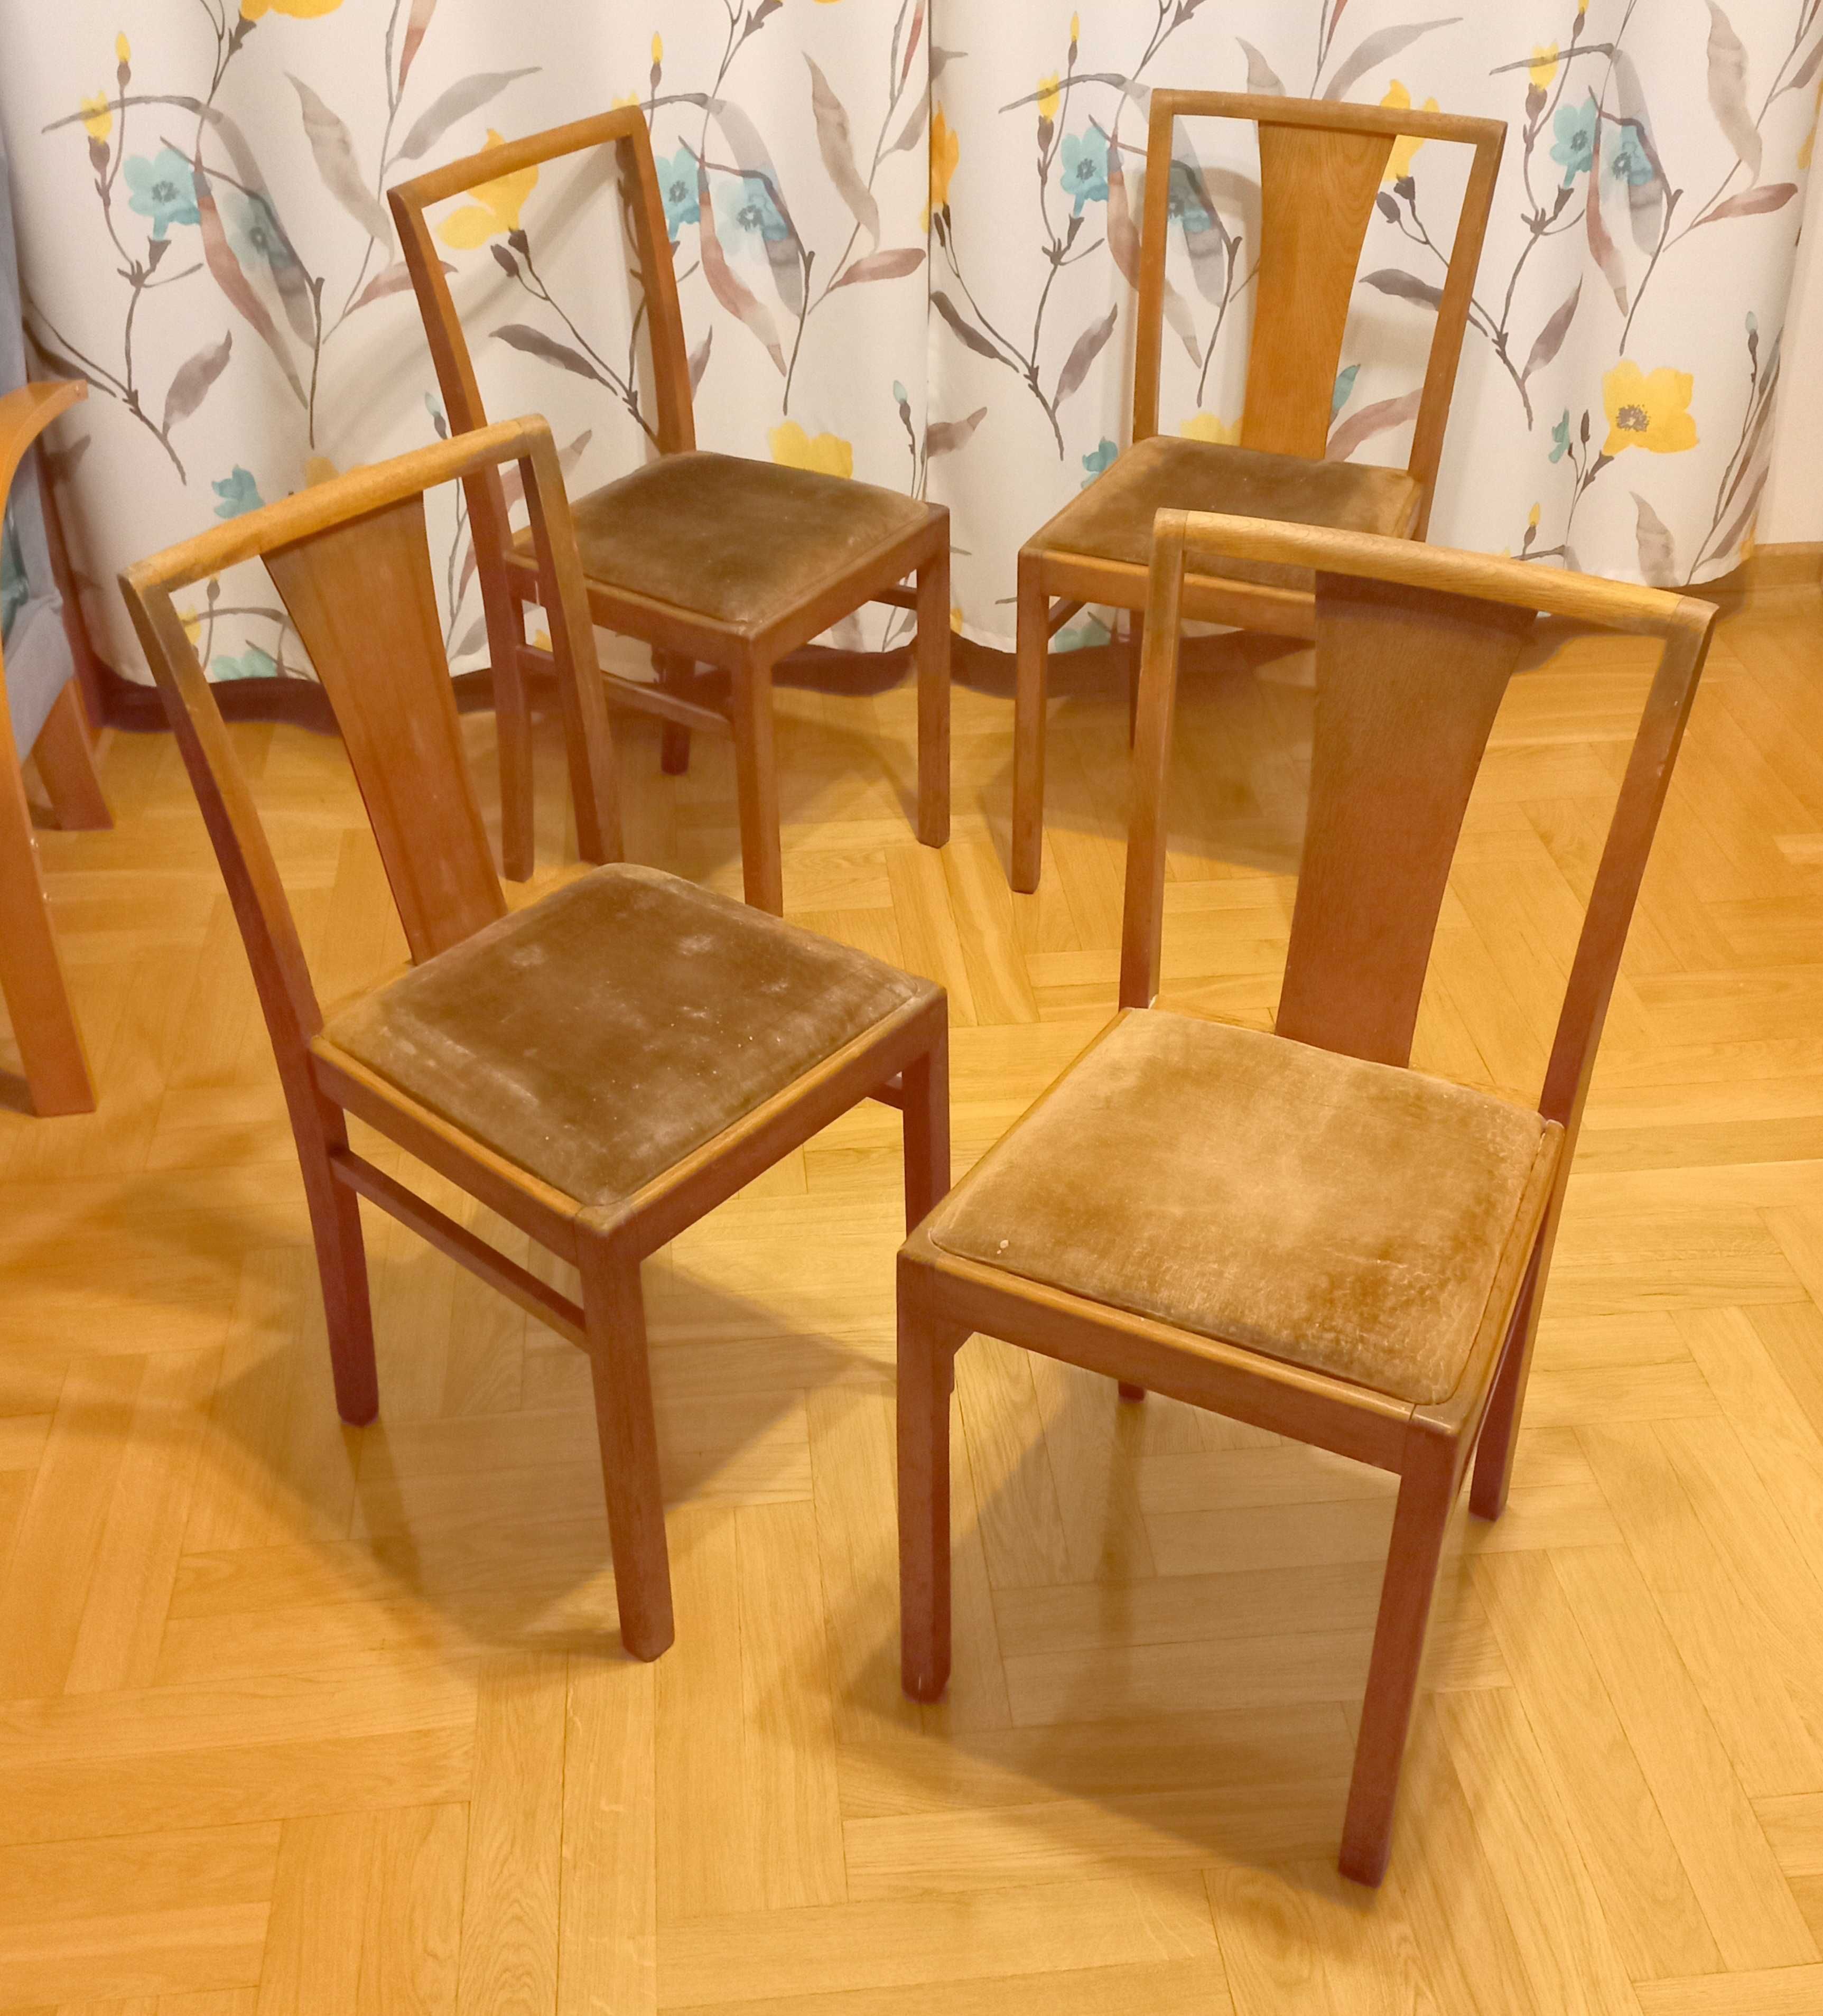 4 Krzesła - polski Design, PRL '60 Vintage  do renowacji odnowienia.